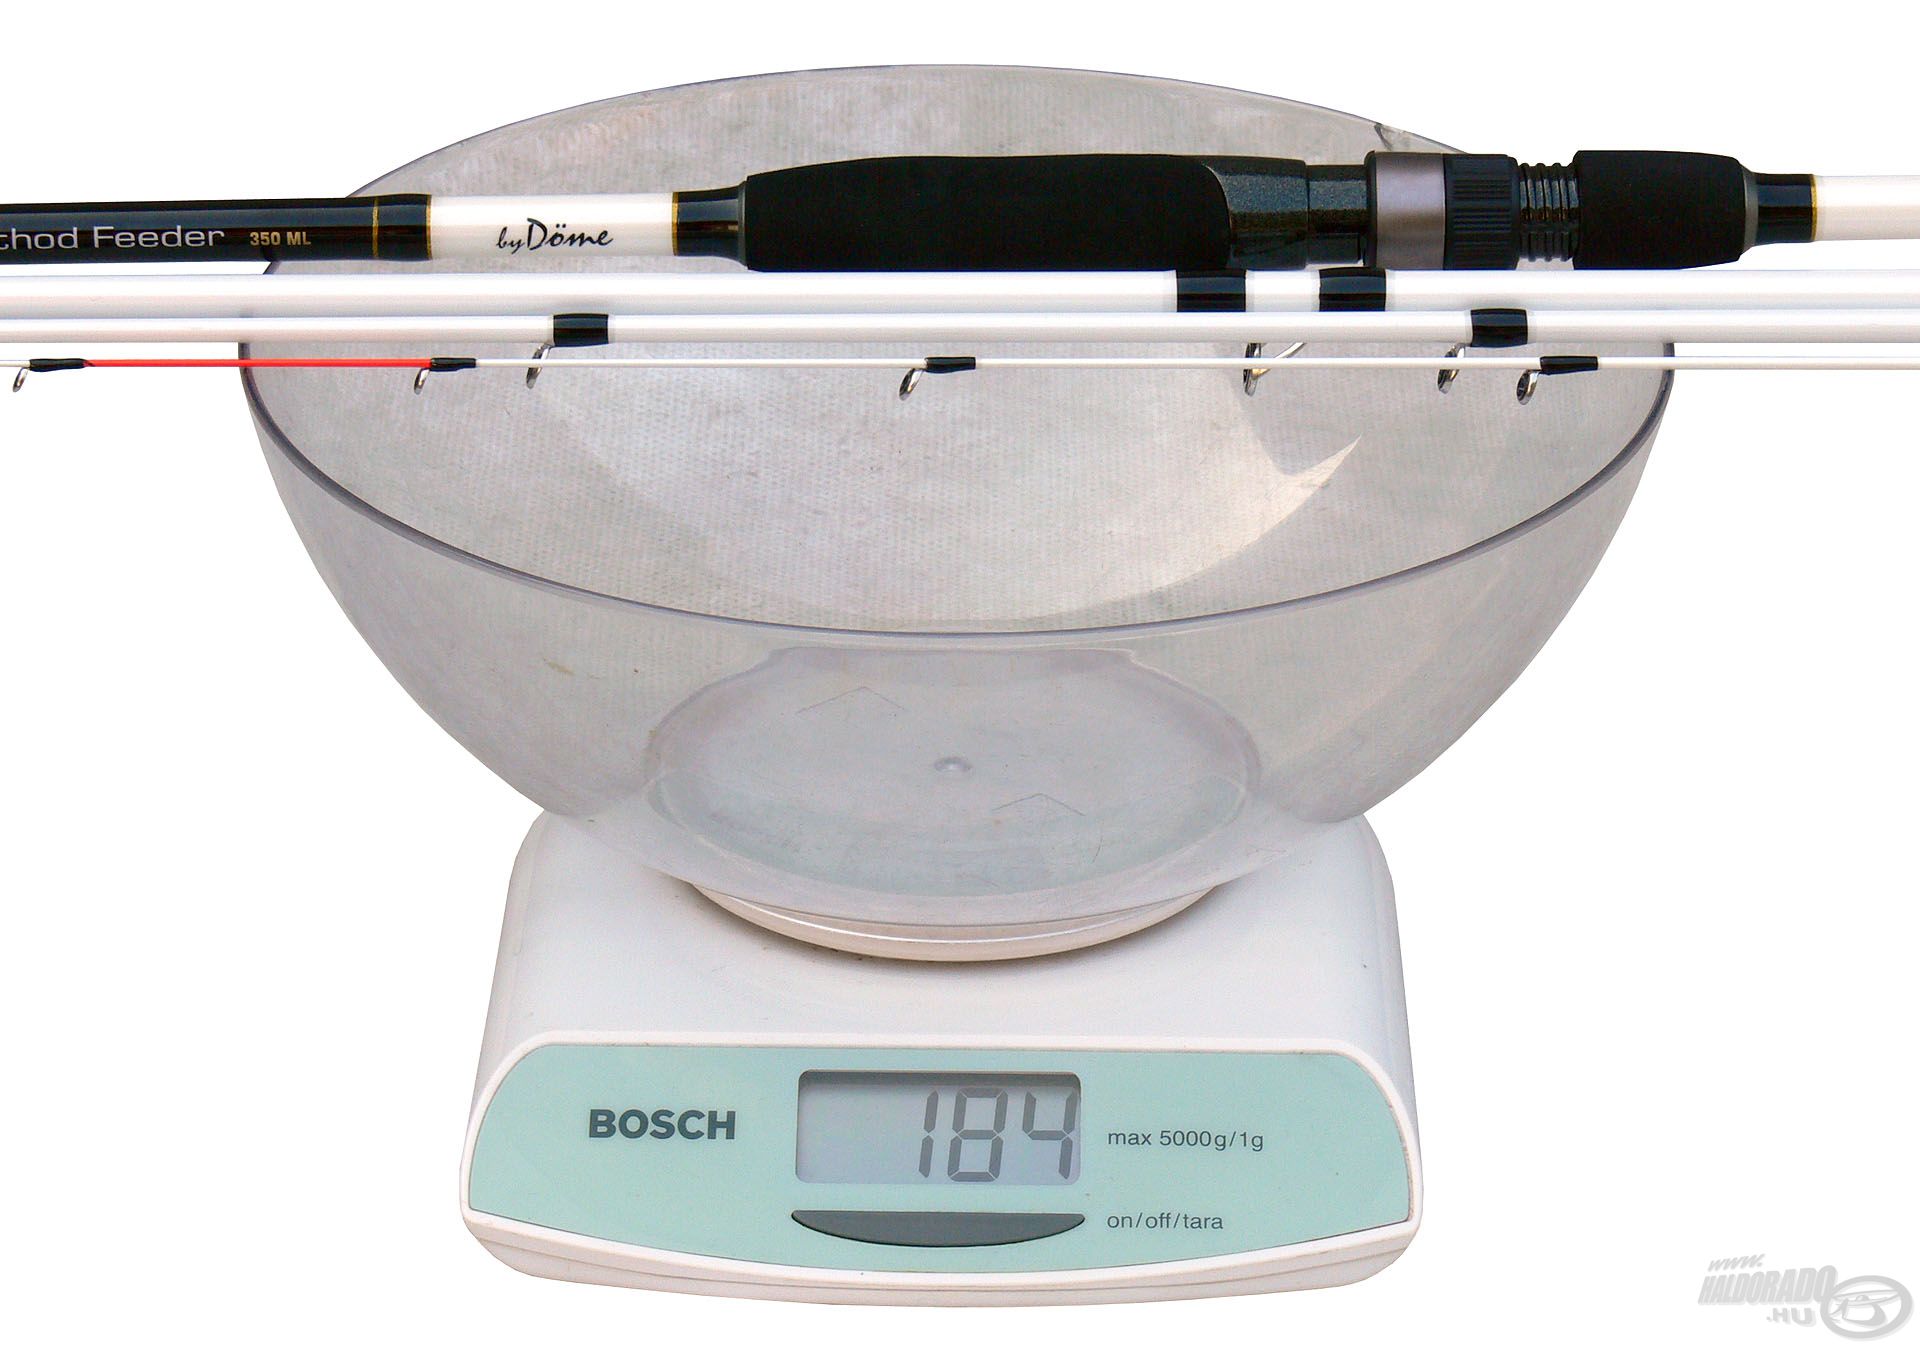 A 350-es Pro Method Feeder botnak, ami a sorozat középső tagja, mindössze 184 gramm a tömege